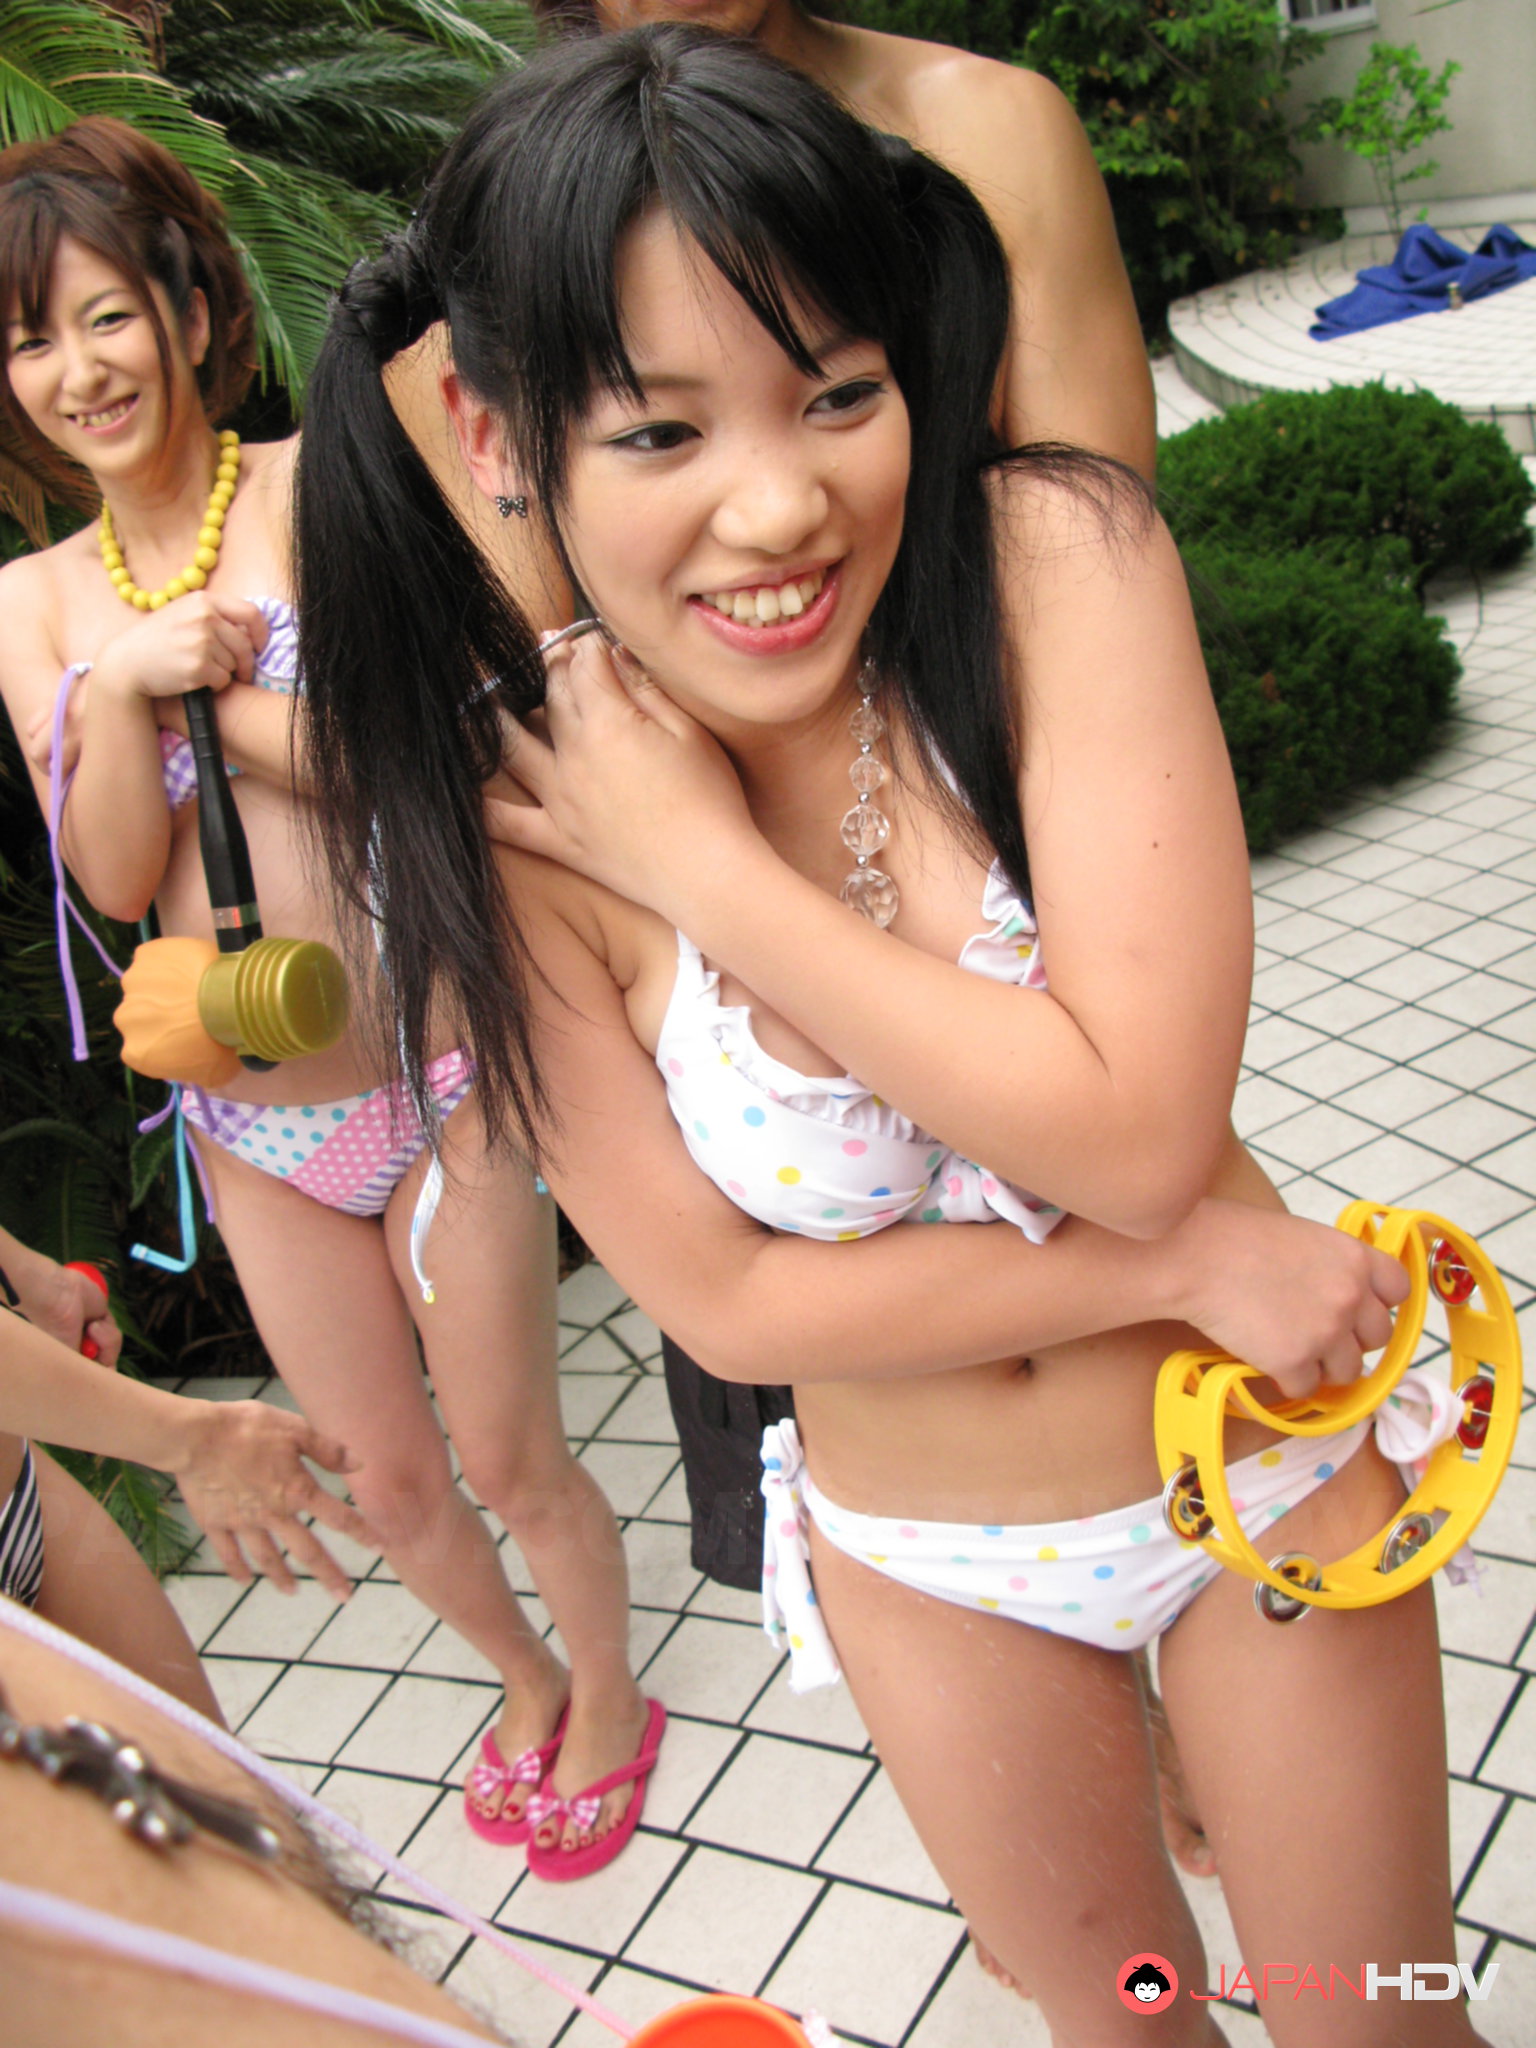 Japanese Nude Pool